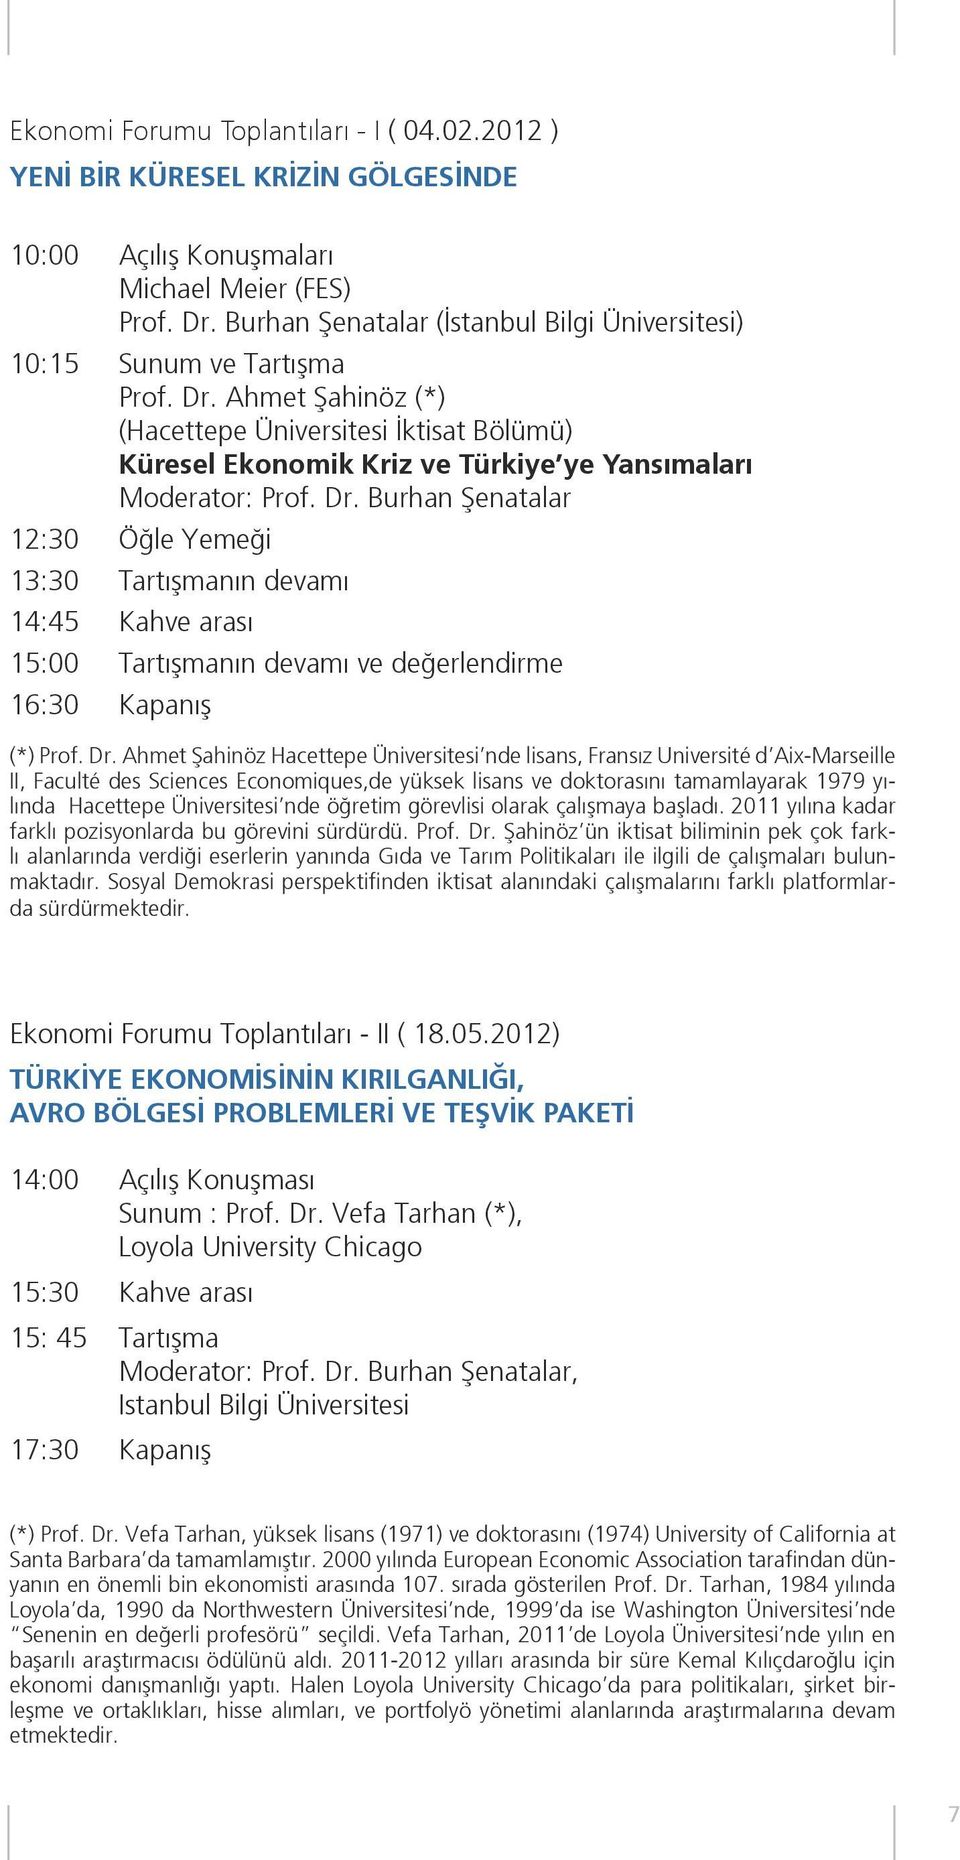 Ahmet Şahinöz (*) (Hacettepe Üniversitesi İktisat Bölümü) Küresel Ekonomik Kriz ve Türkiye ye Yansımaları Moderator: Prof. Dr.